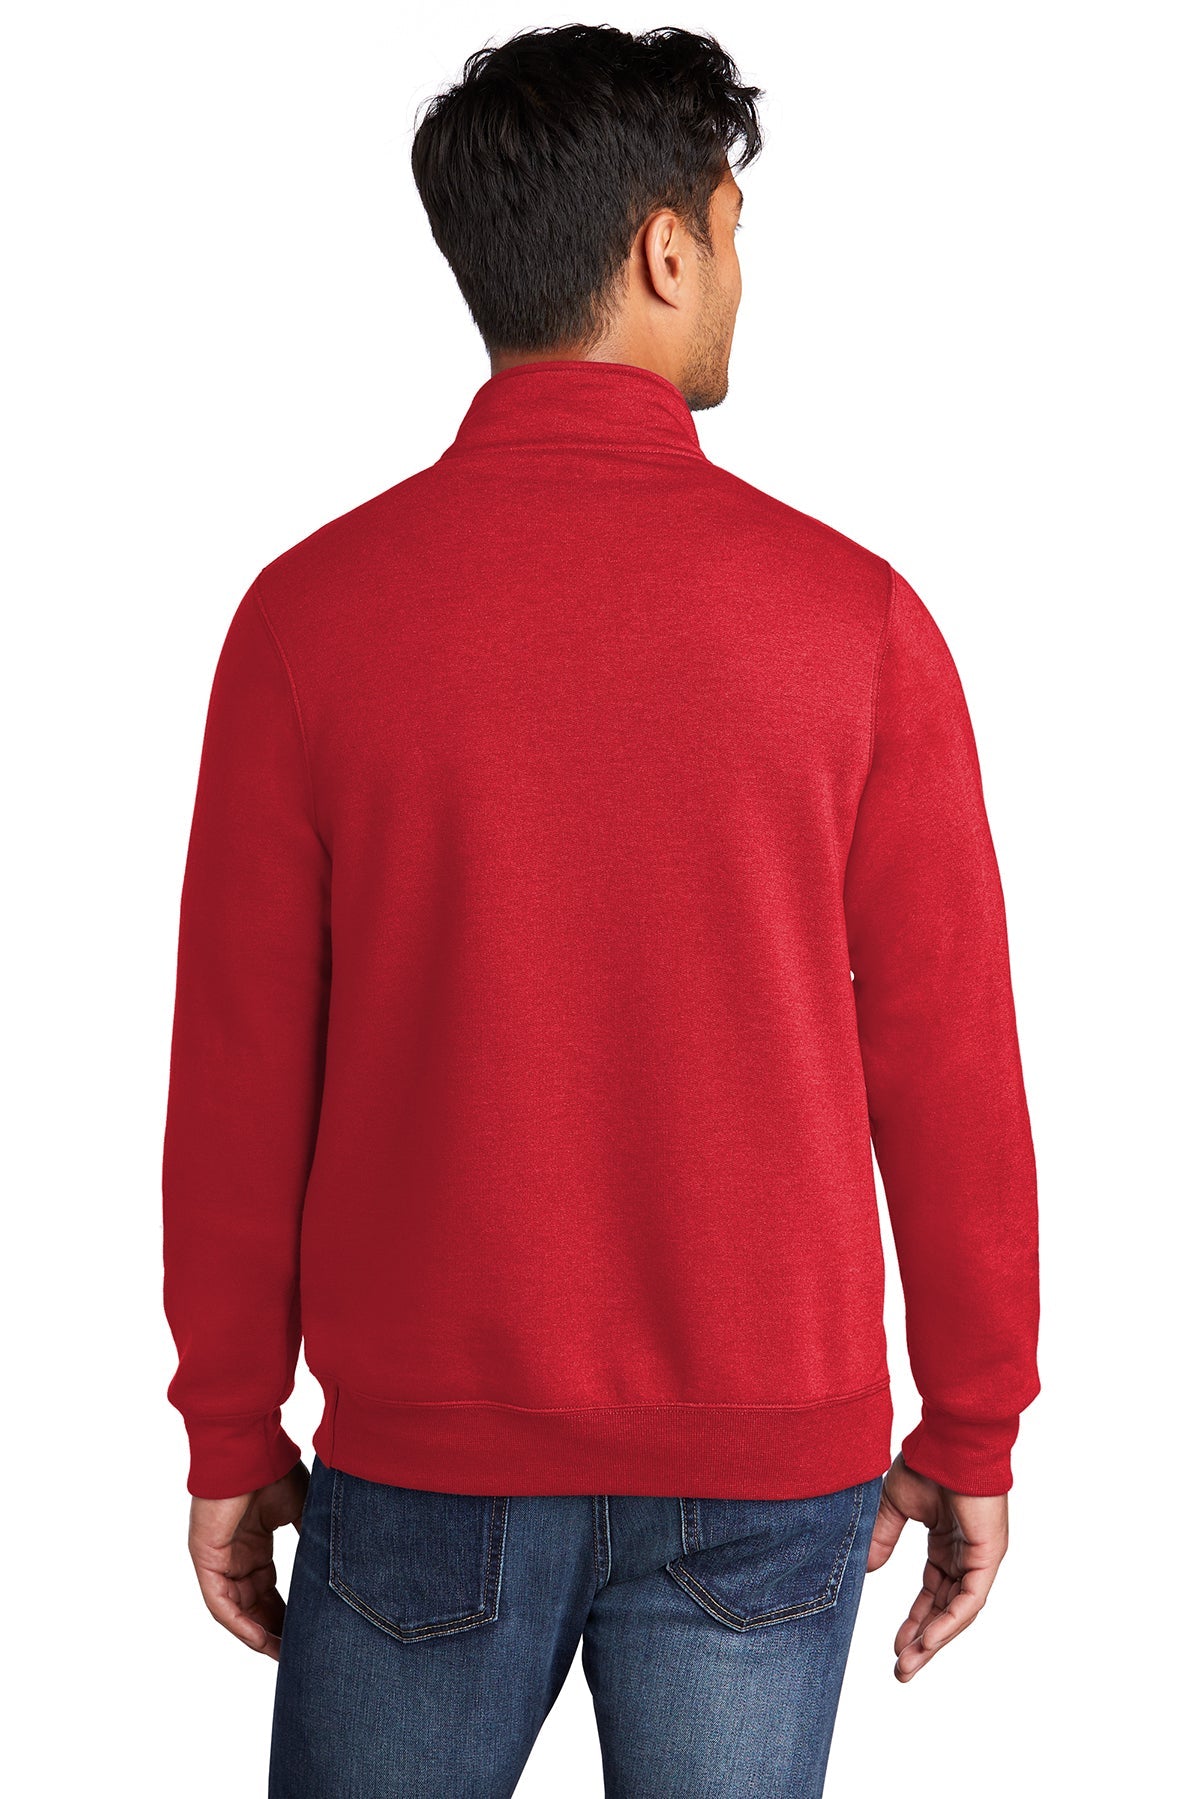 Port & Company Core Fleece 1/4-Zip Pullover Sweatshirt PC78Q Red